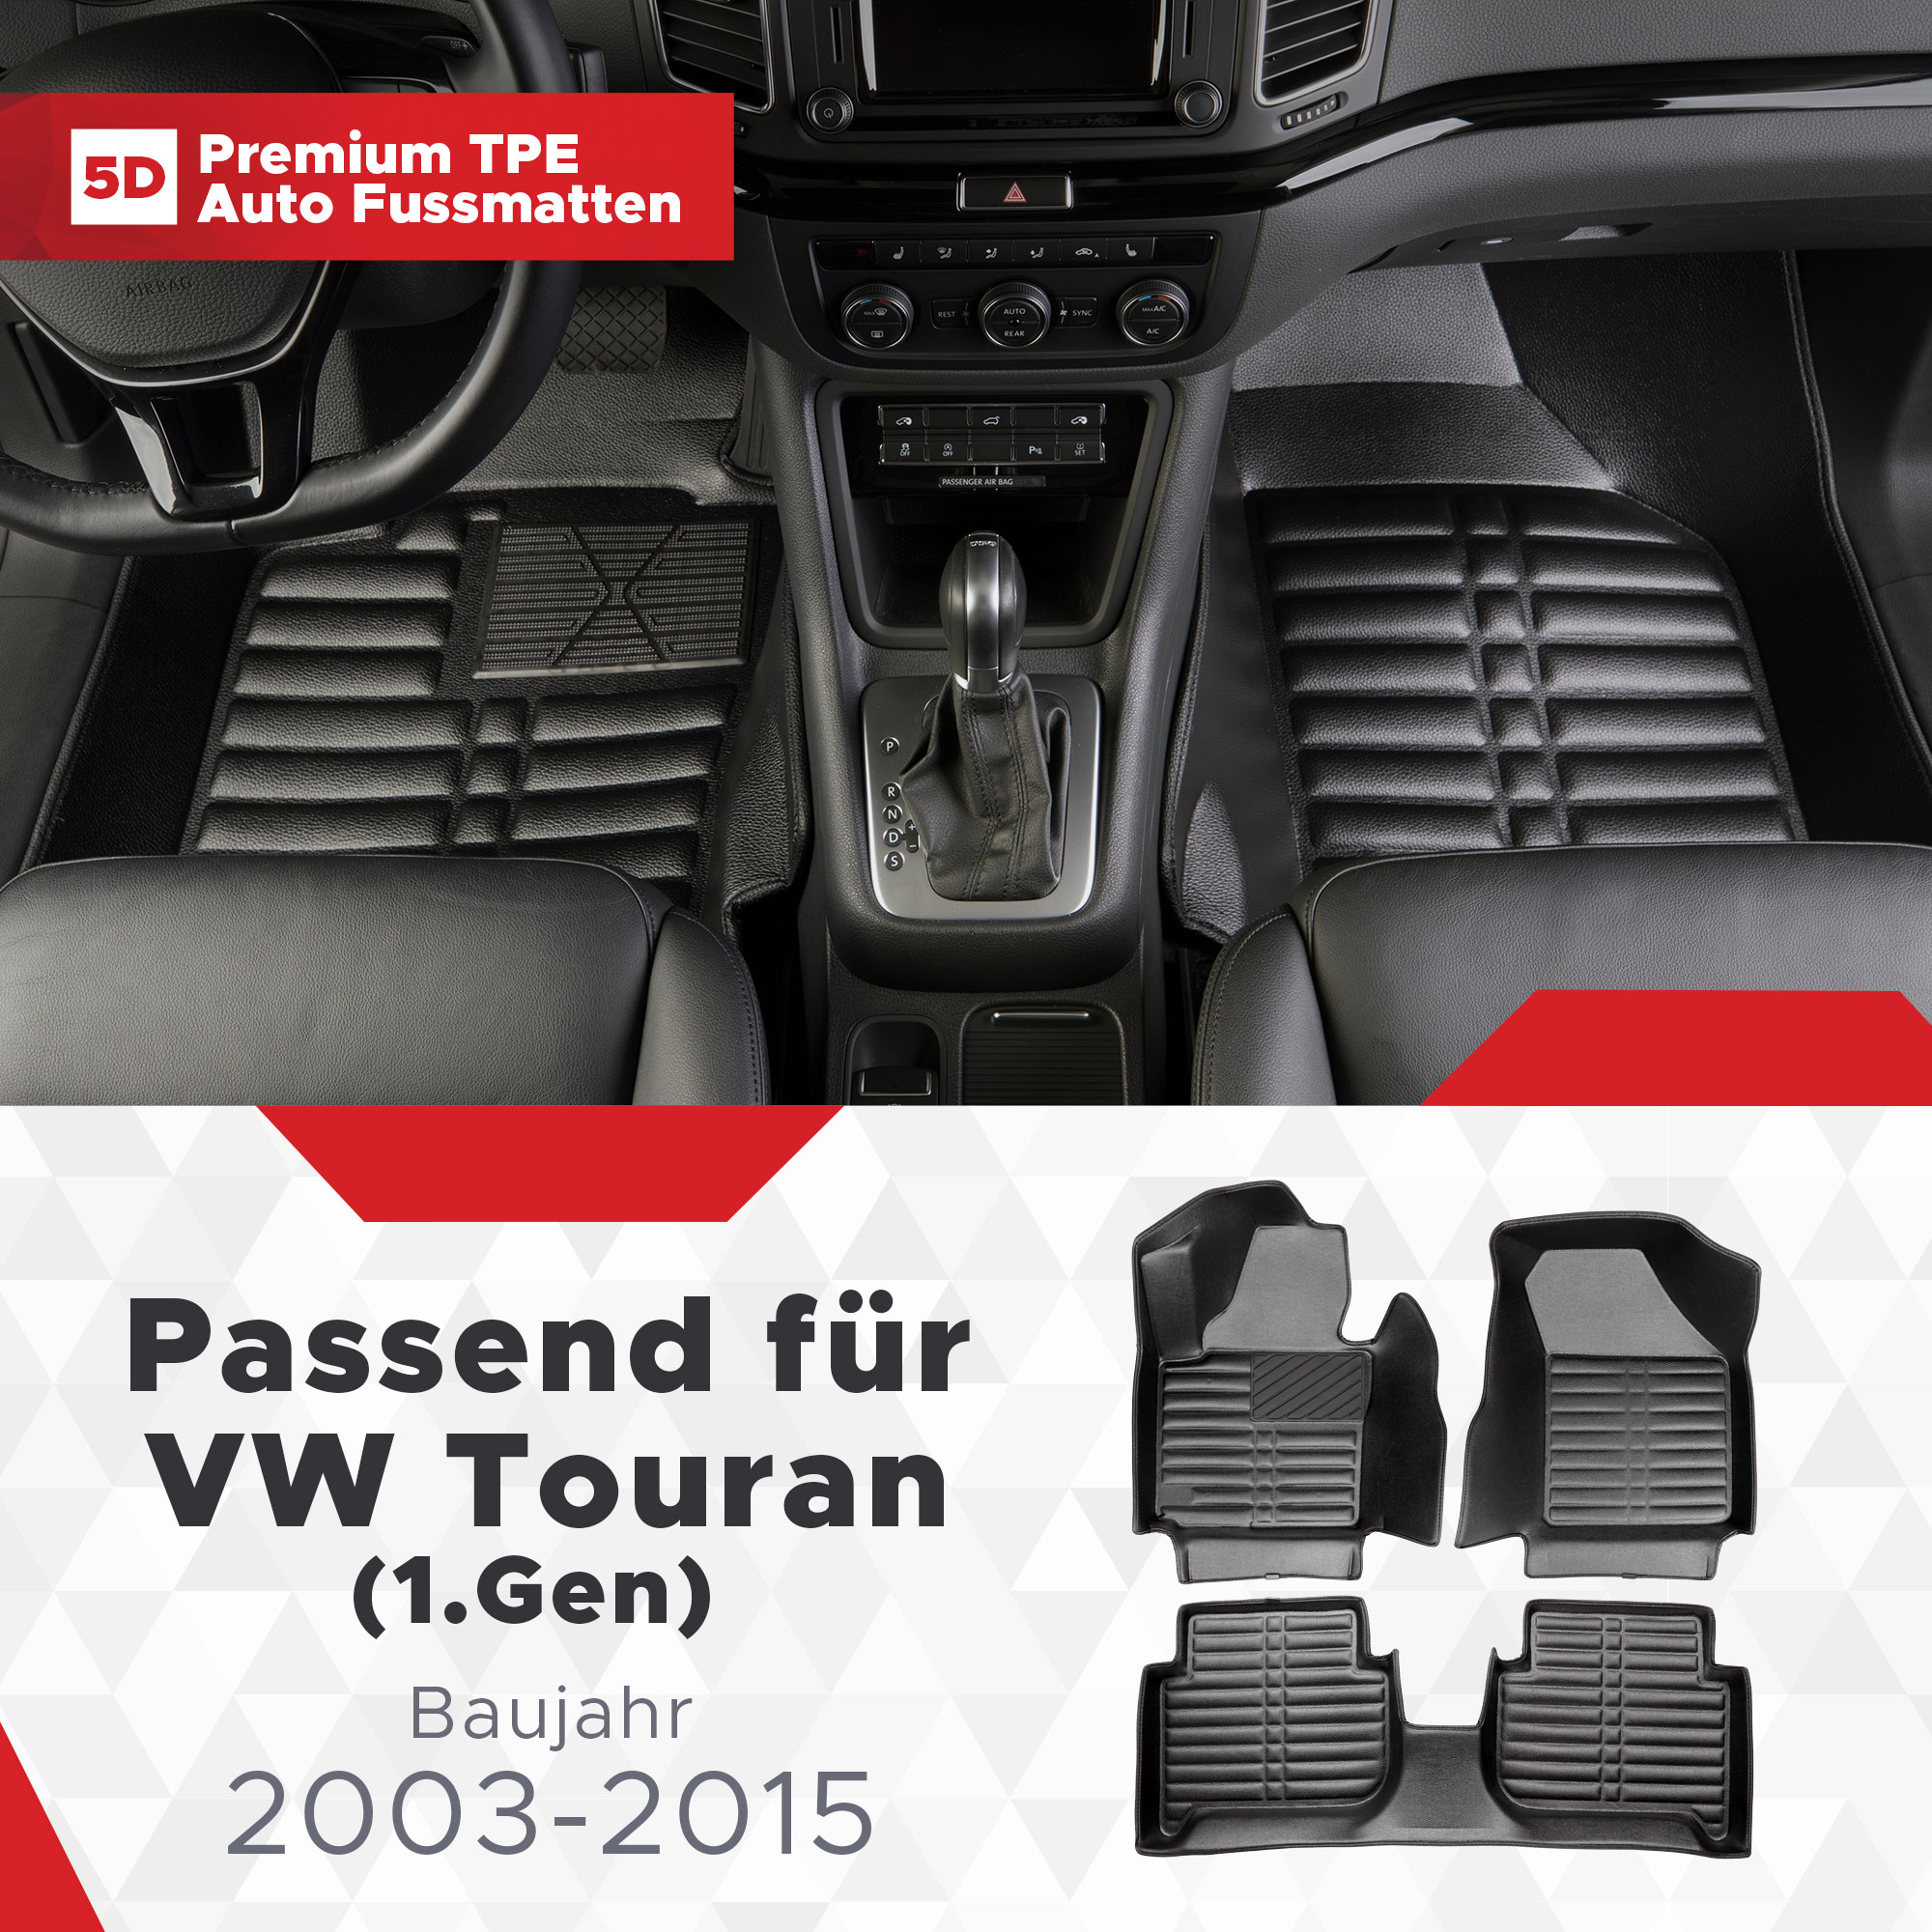 5D VW Touran (1.Gen) Fussmatten Bj 2003-2015 TPE